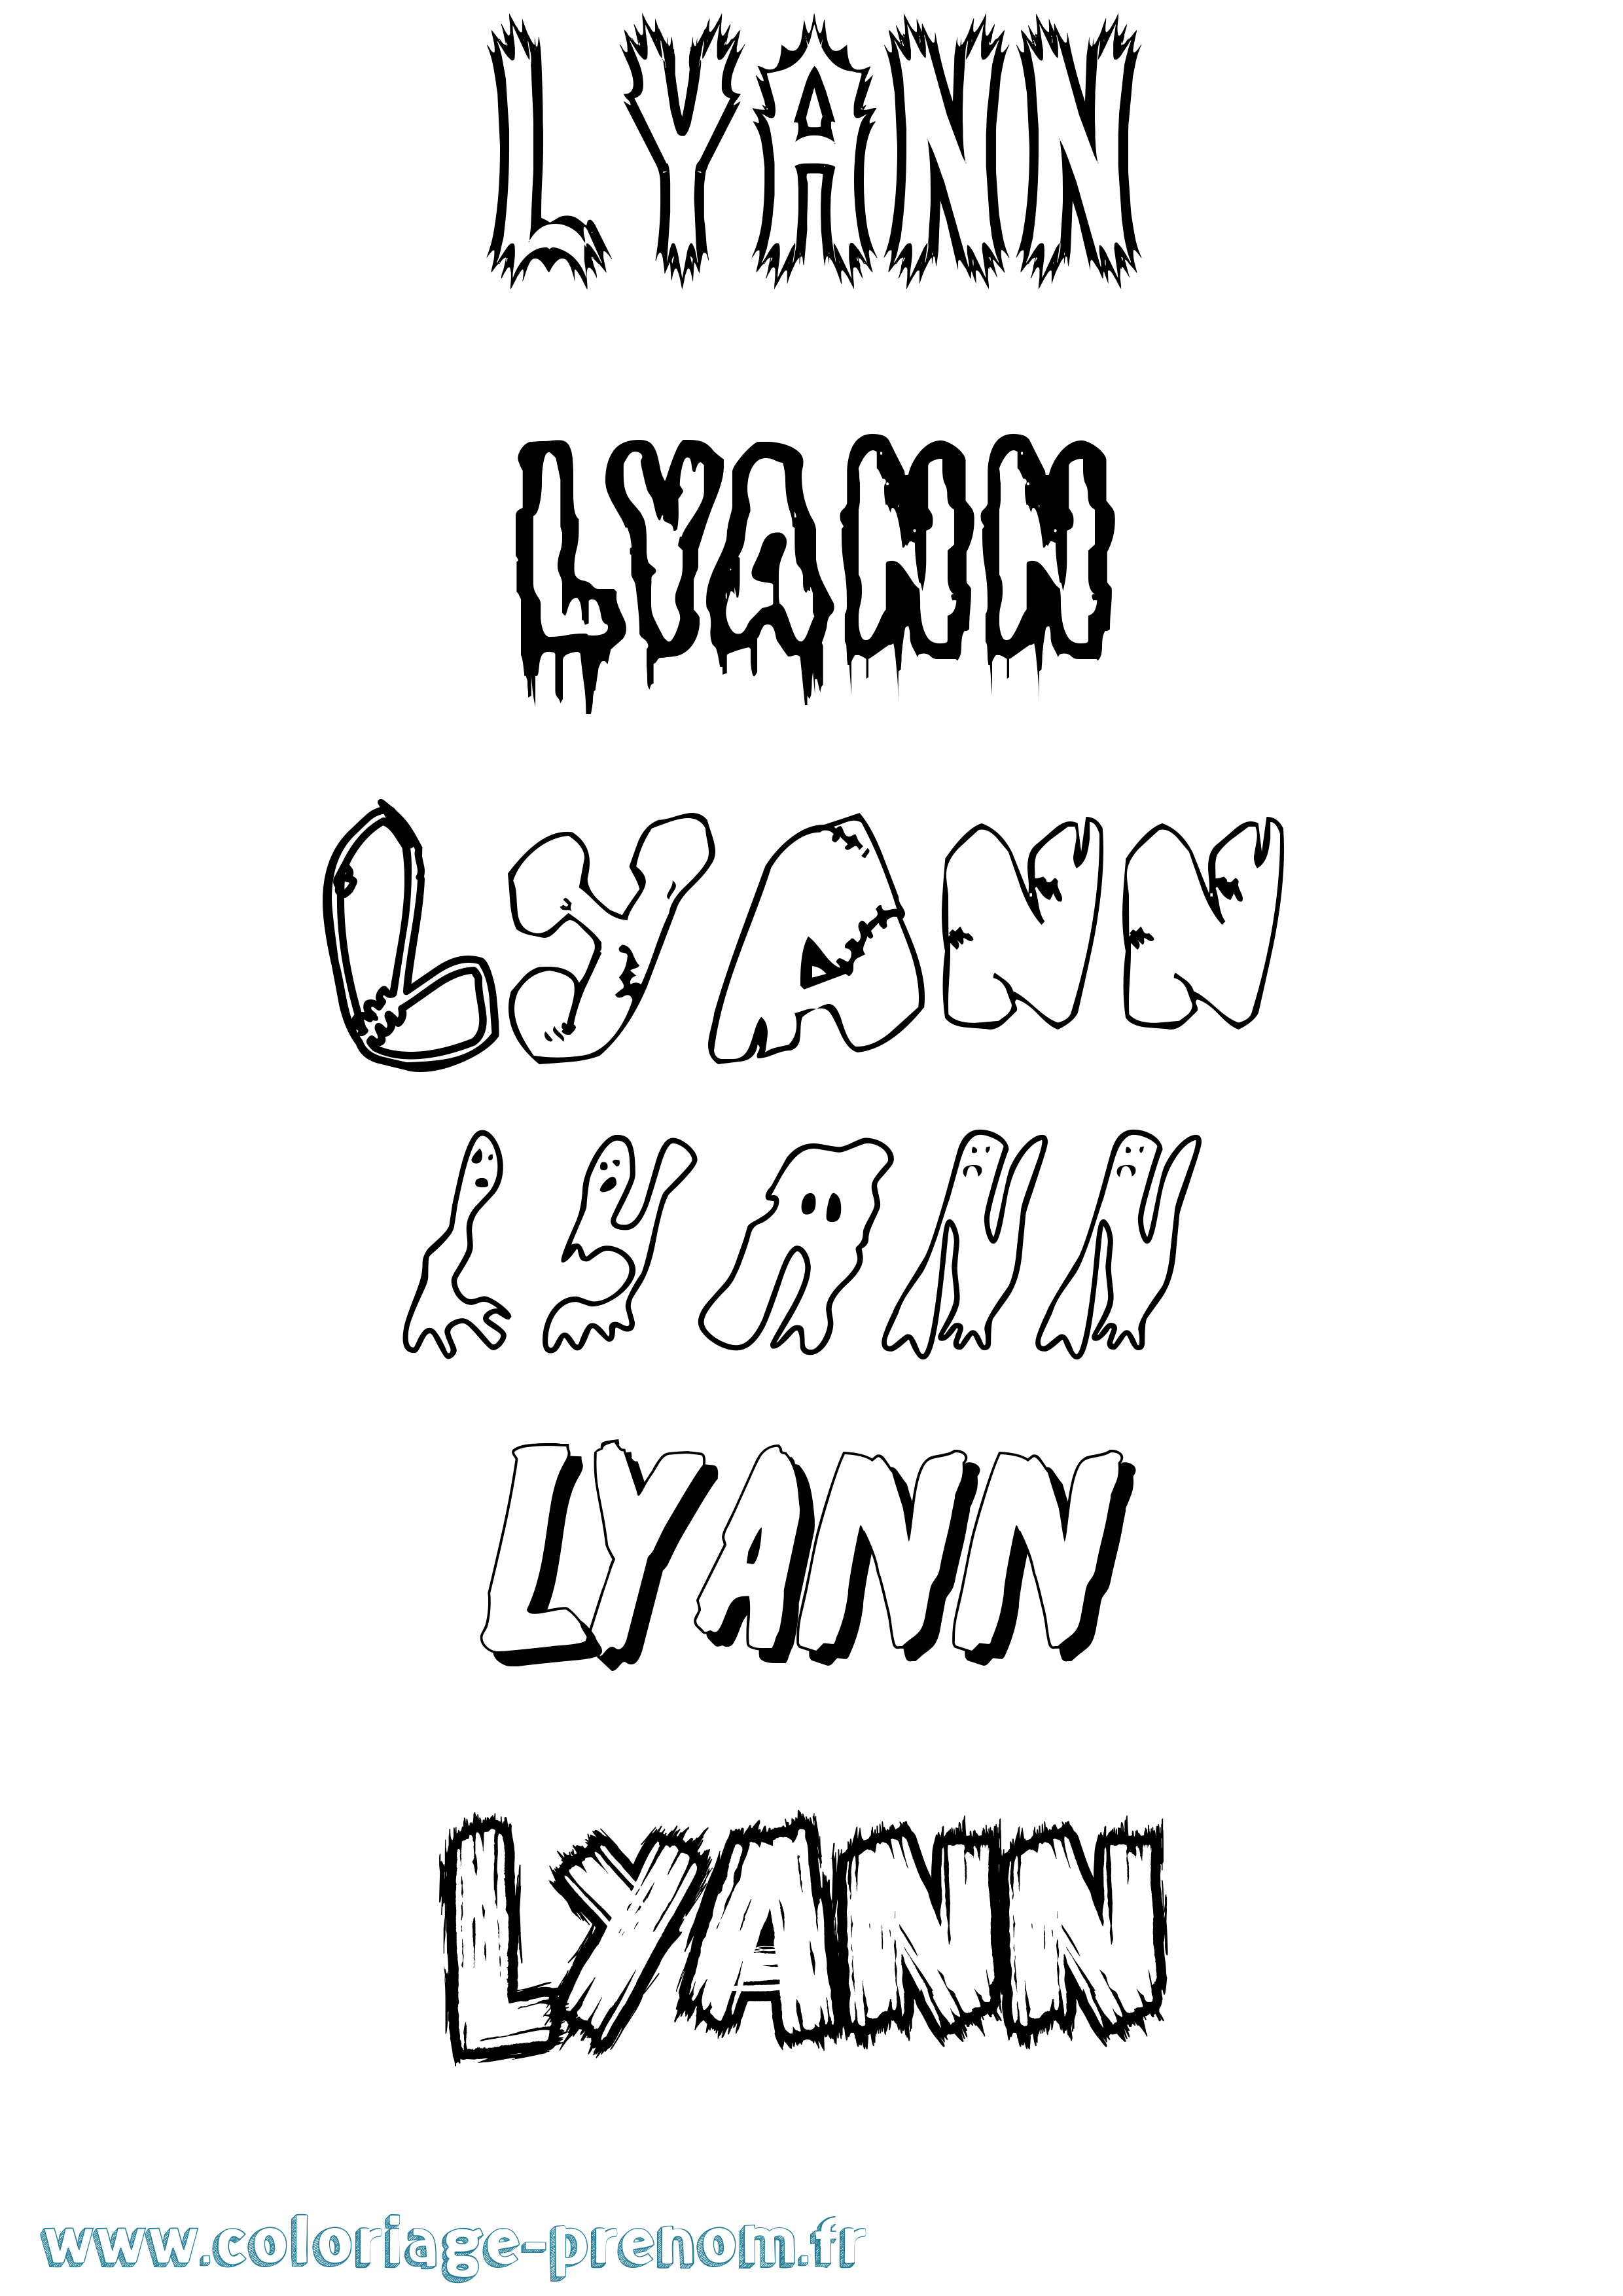 Coloriage prénom Lyann Frisson